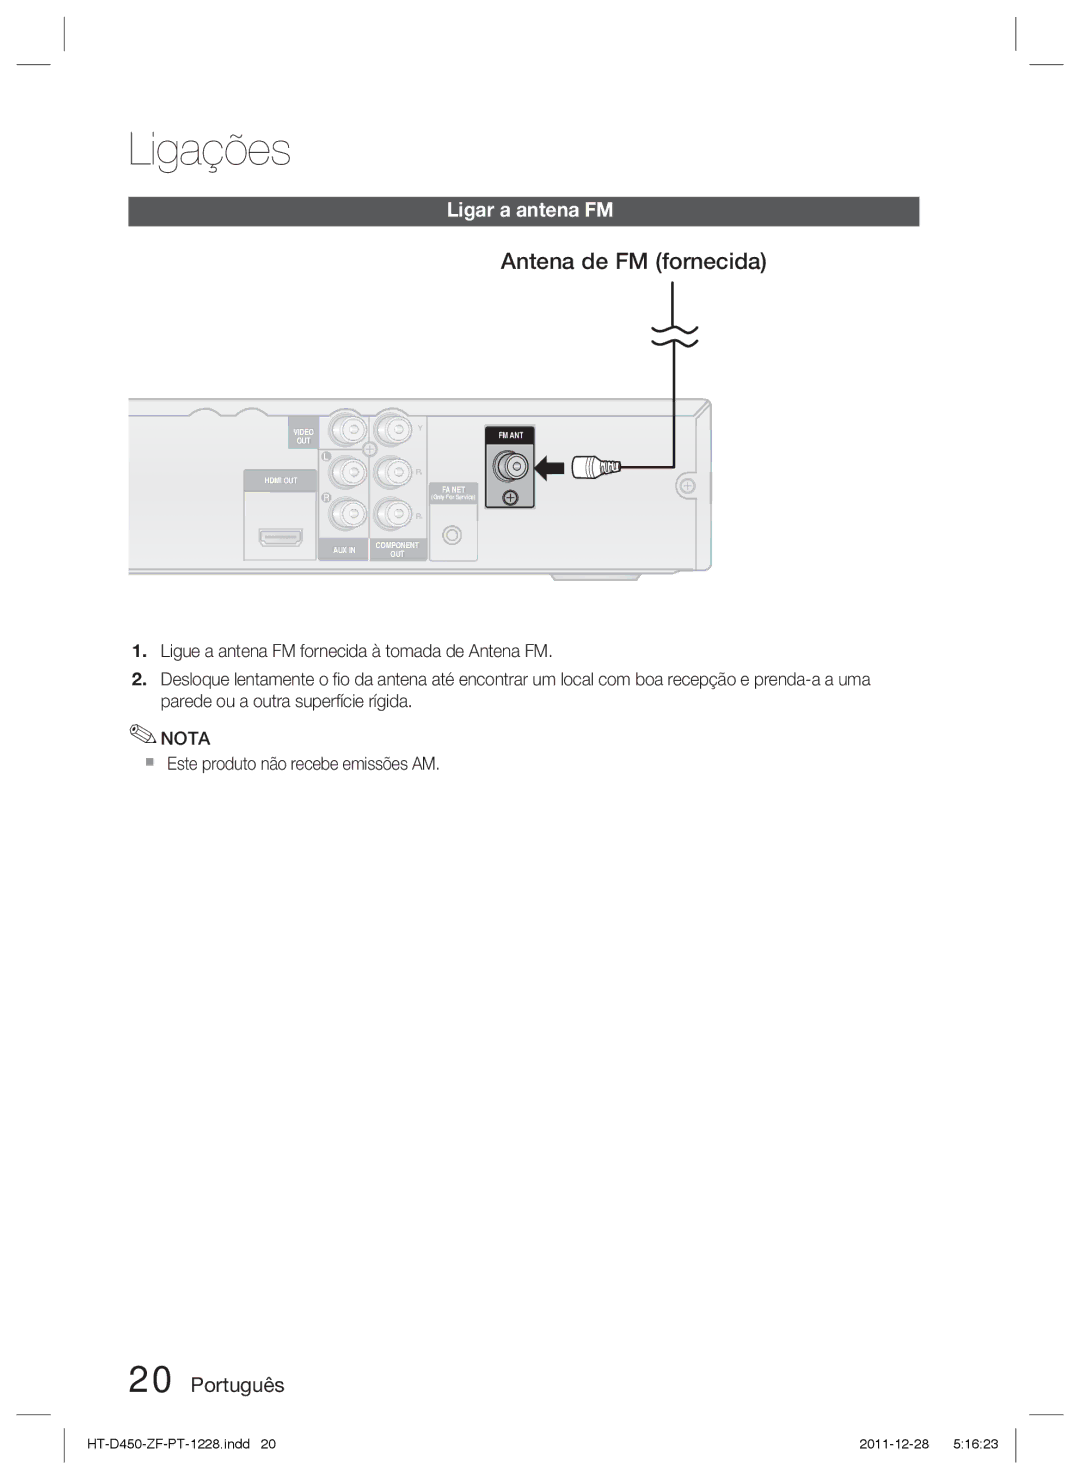 Samsung HT-D455/ZF manual Antena de FM fornecida, Ligar a antena FM,  Este produto não recebe emissões AM 